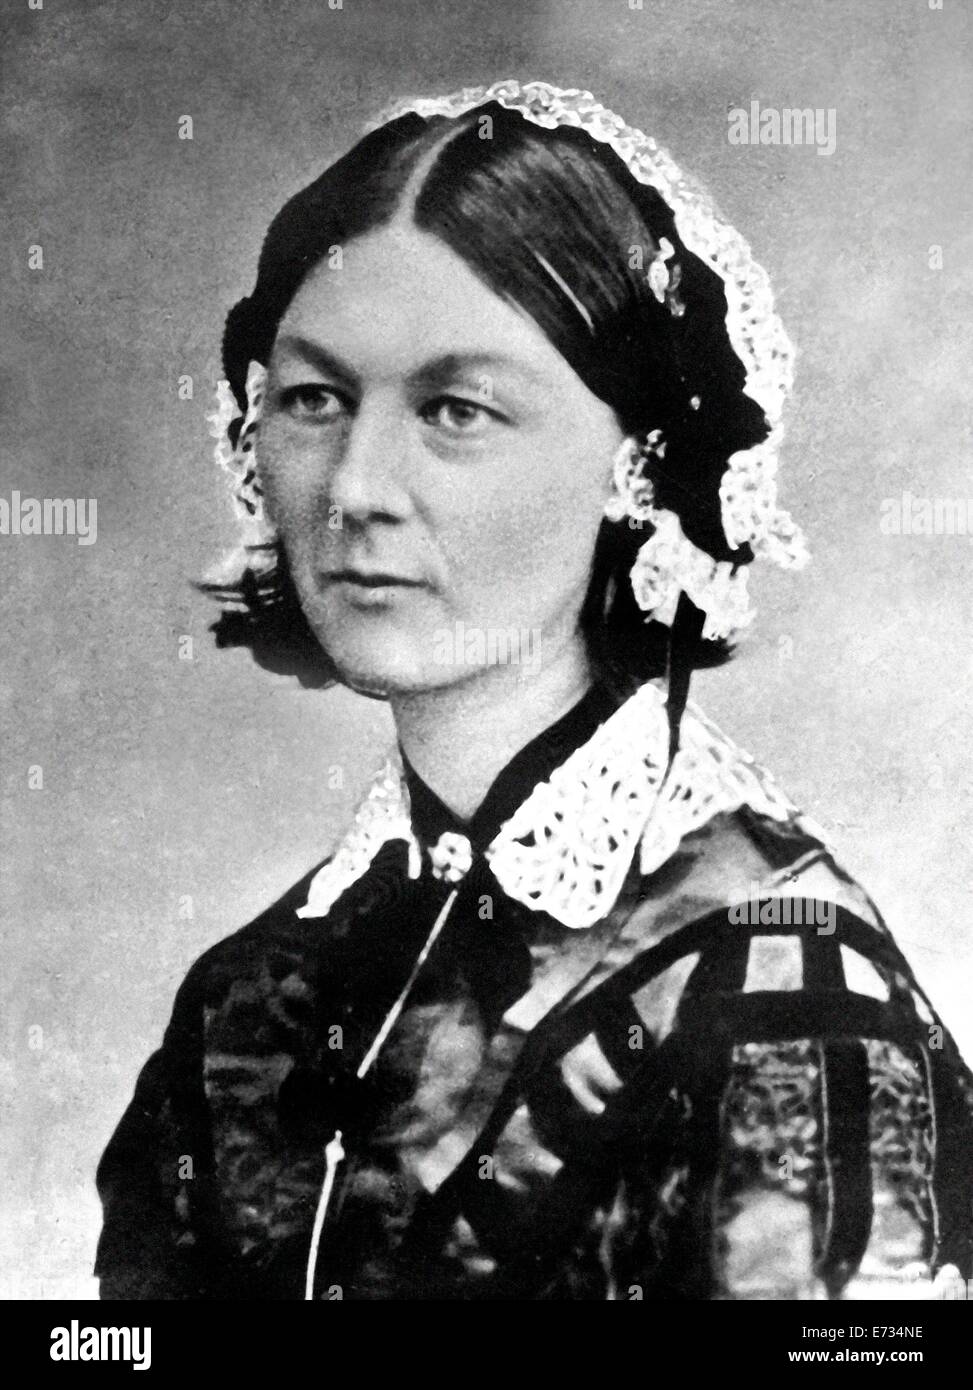 Florence Nightingale es famoso por su labor de enfermería durante la Guerra de Crimea (1854 - 56). A partir de los archivos de prensa Servicio de retrato (vertical) Oficina de Prensa anteriormente Foto de stock